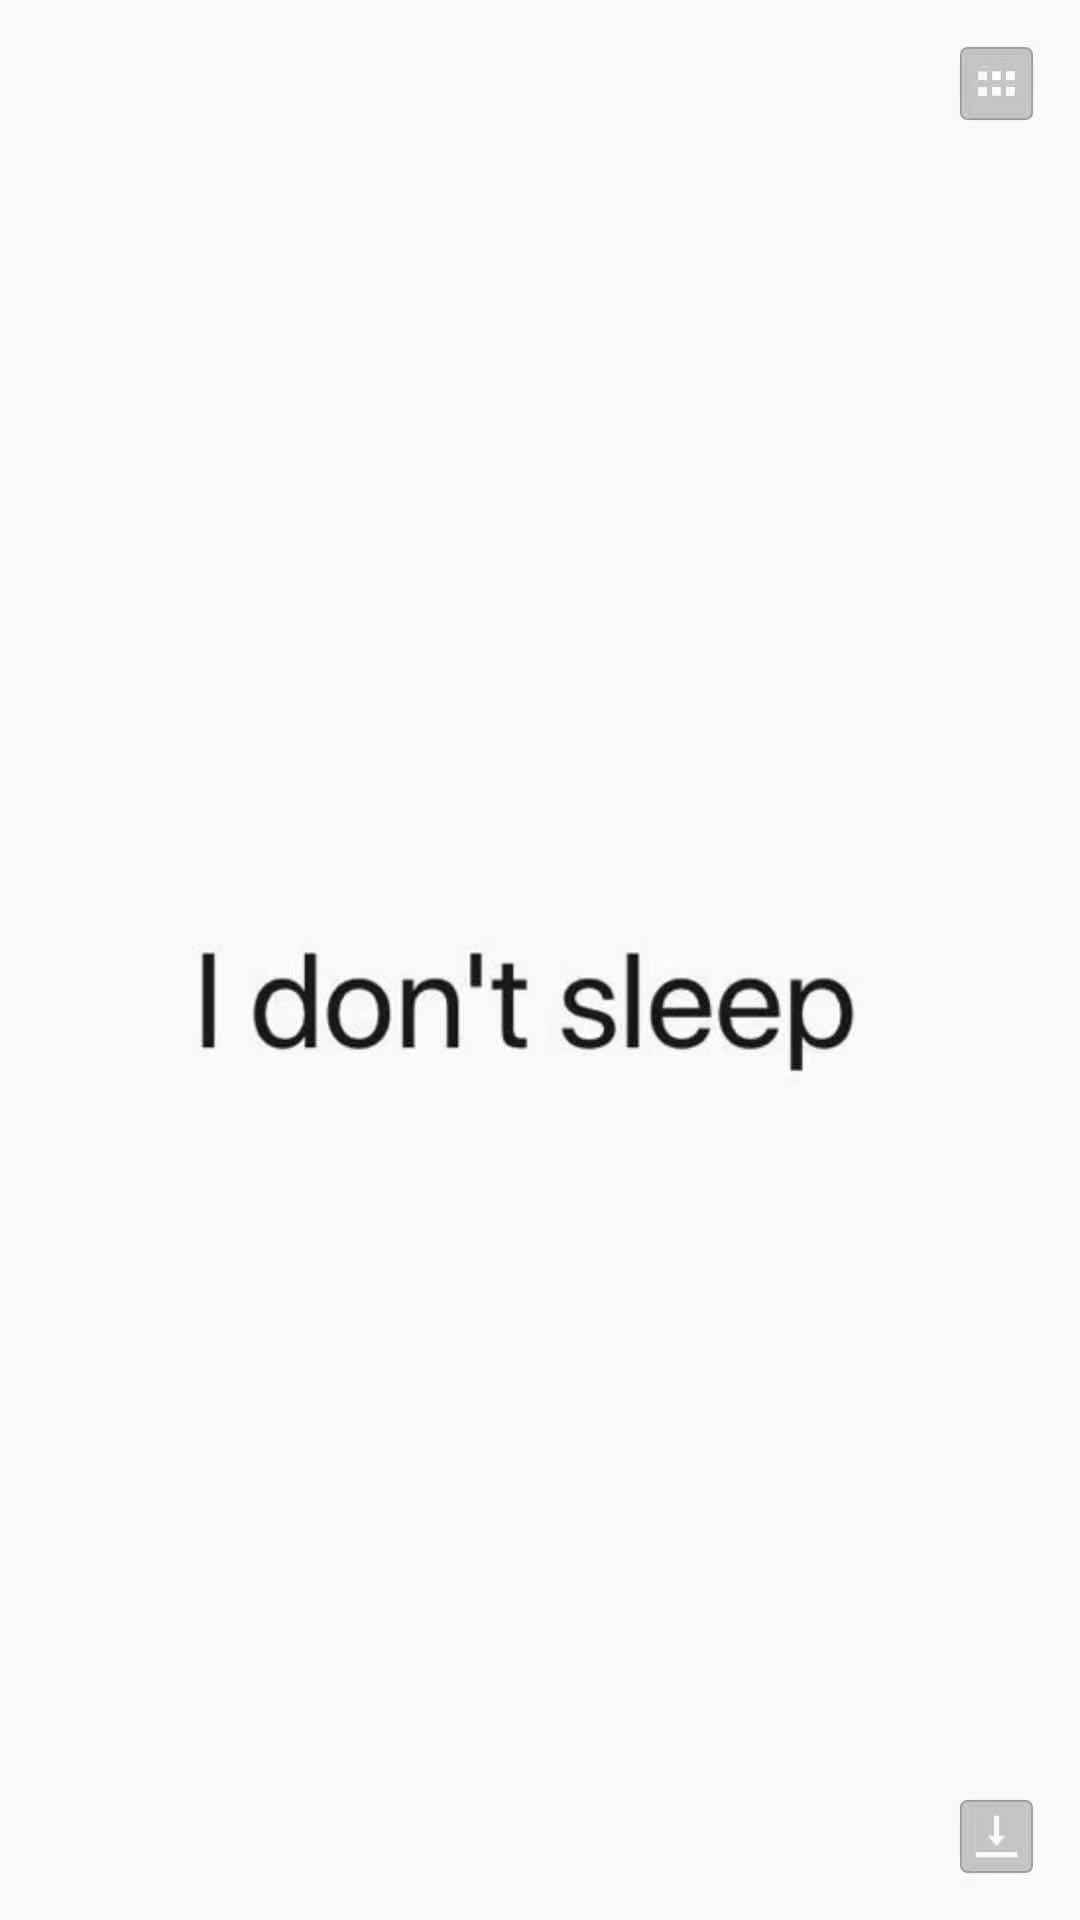 I don't sleep